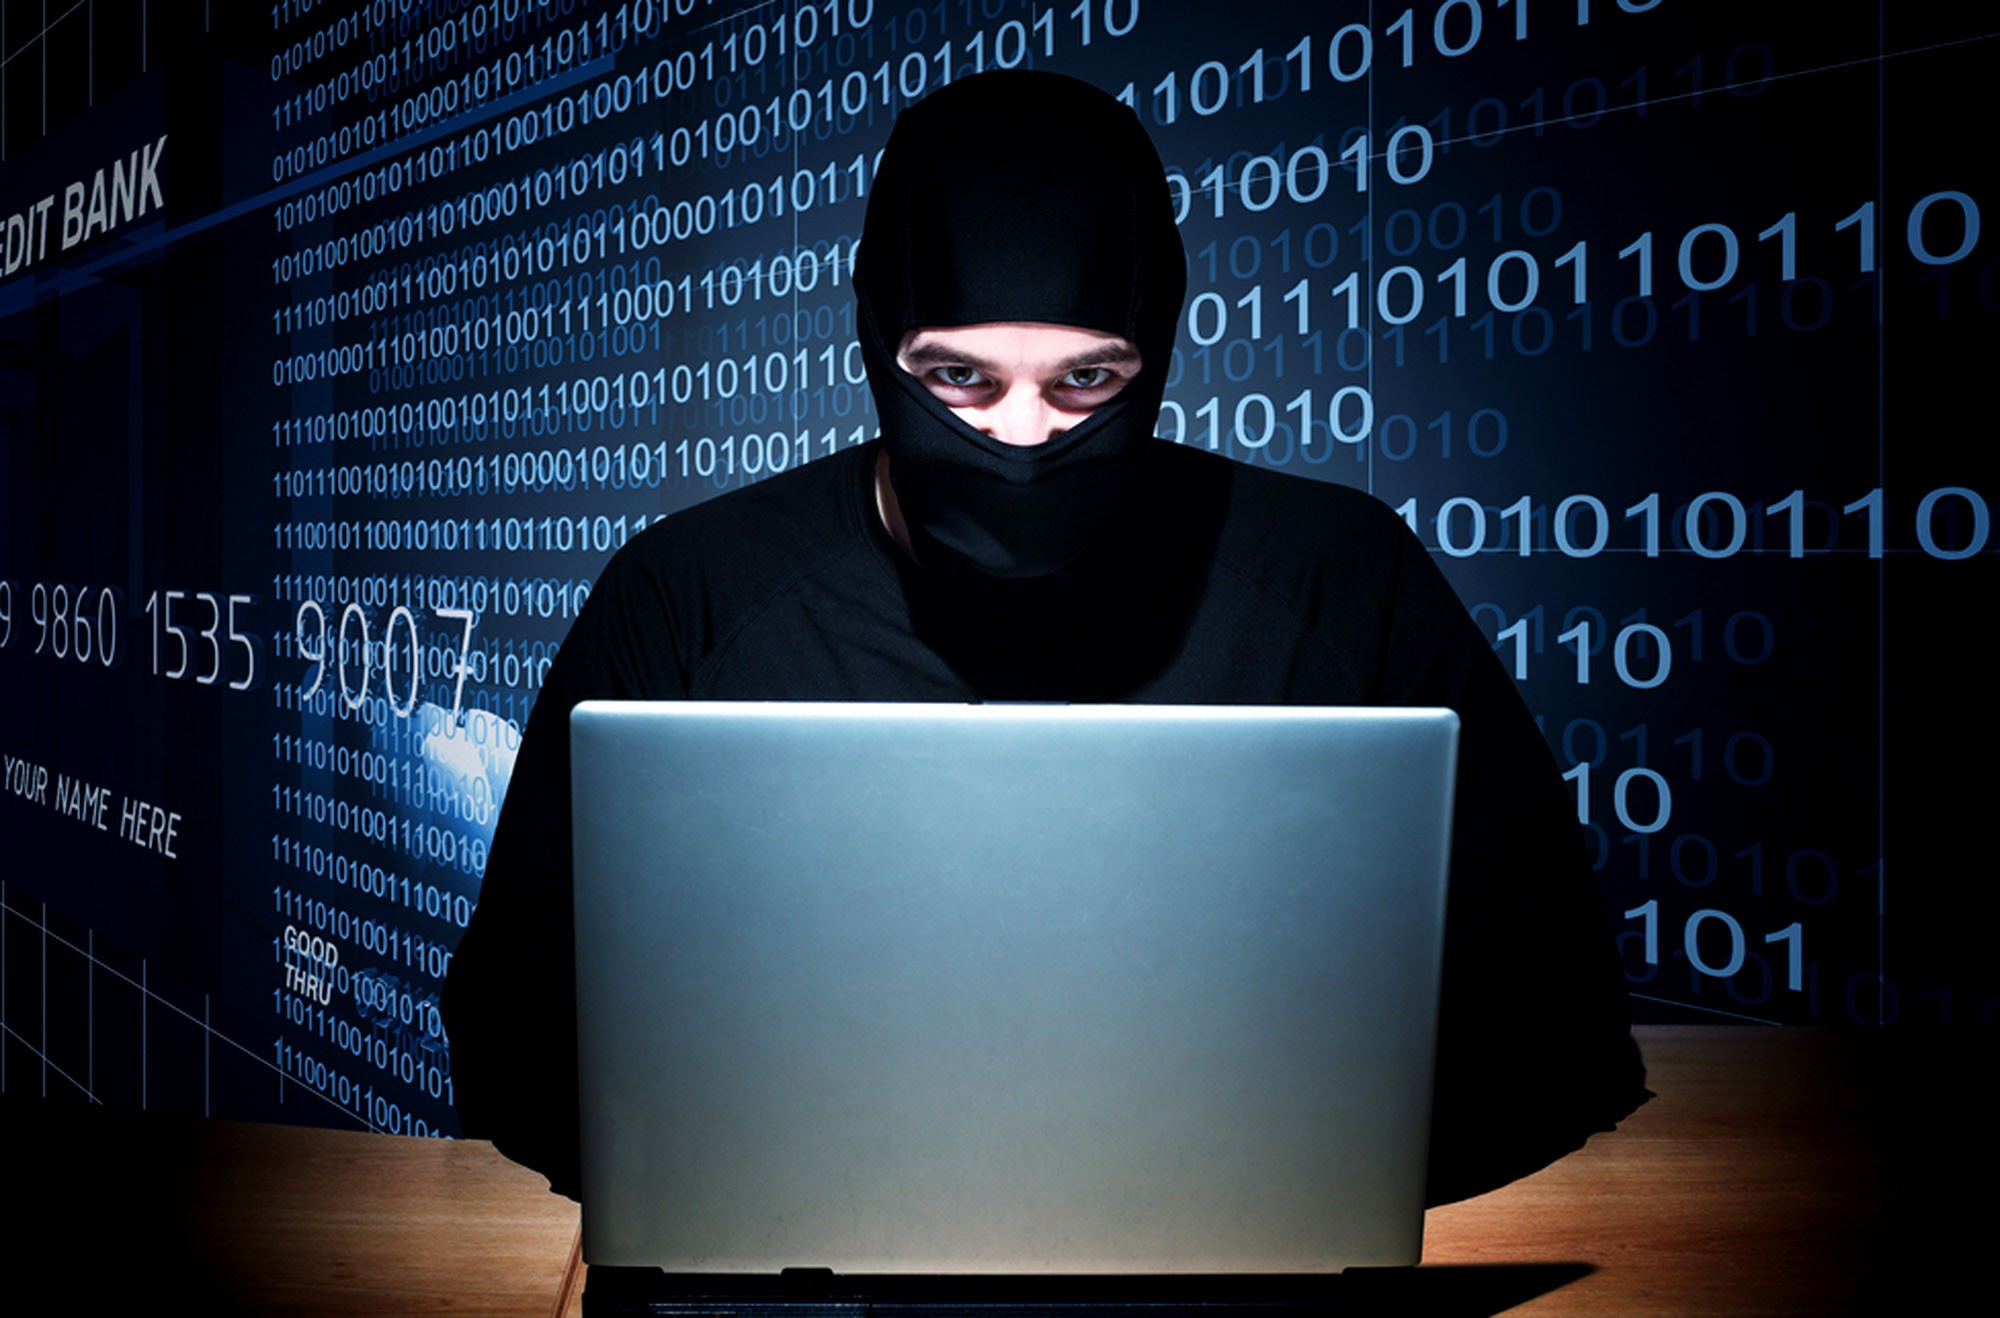 Что делать, если хакеры взломали систему «Клиент-банк»?